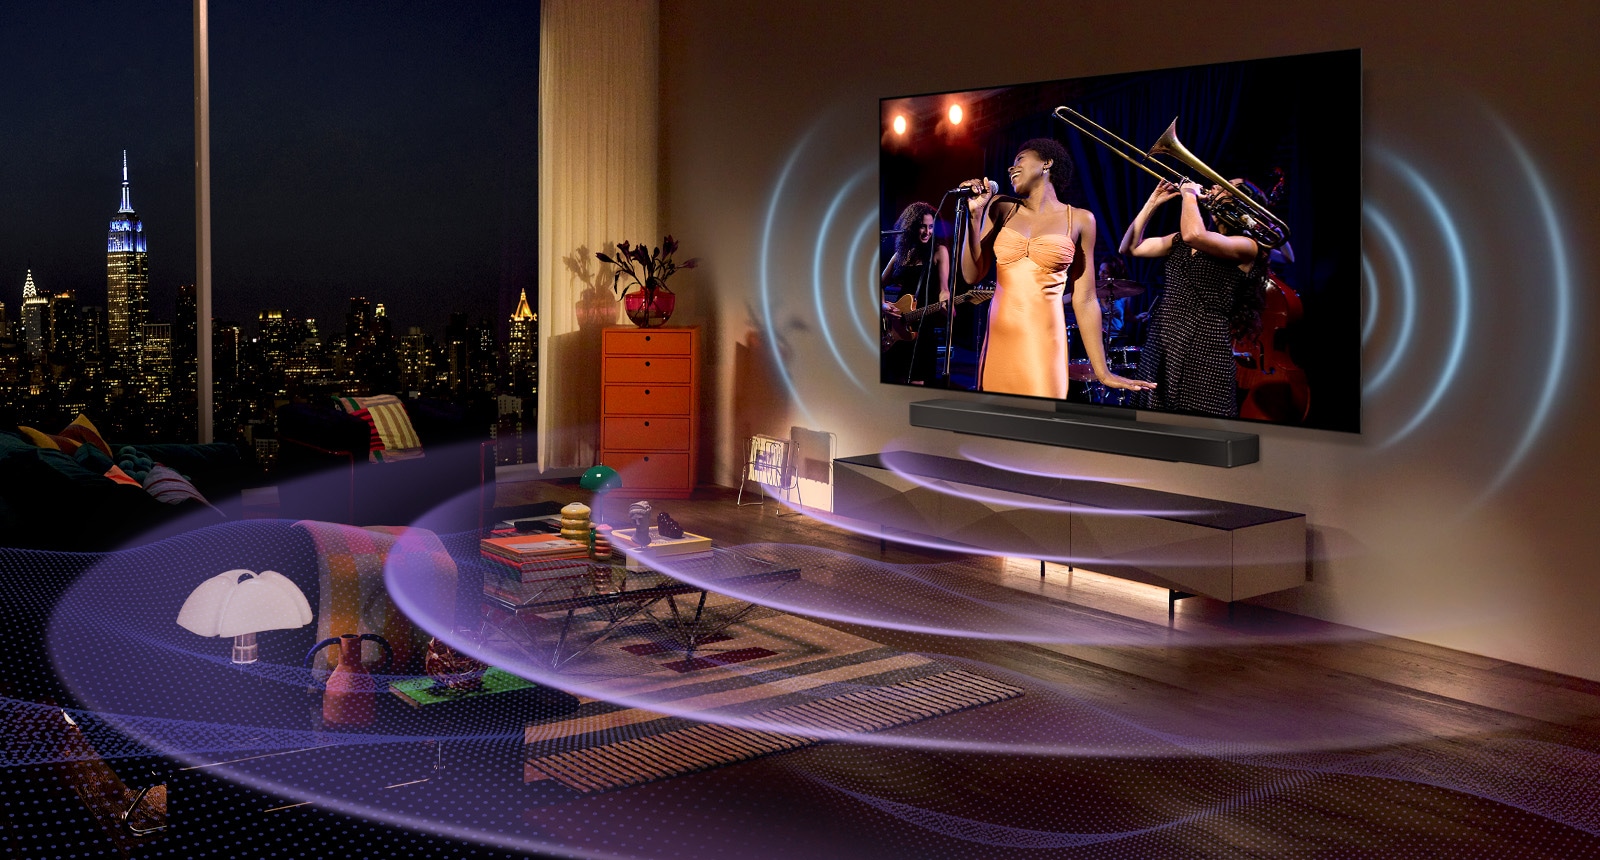 Slika LG OLED TV u prostoriji sa prikazom koncerta. Plave zakrivljene linije koje prikazuju zvuk televizora i ljubičaste zakrivljene linije koje predstavljaju zvuk Soundbar zvučnika koji ispunjava prostor.